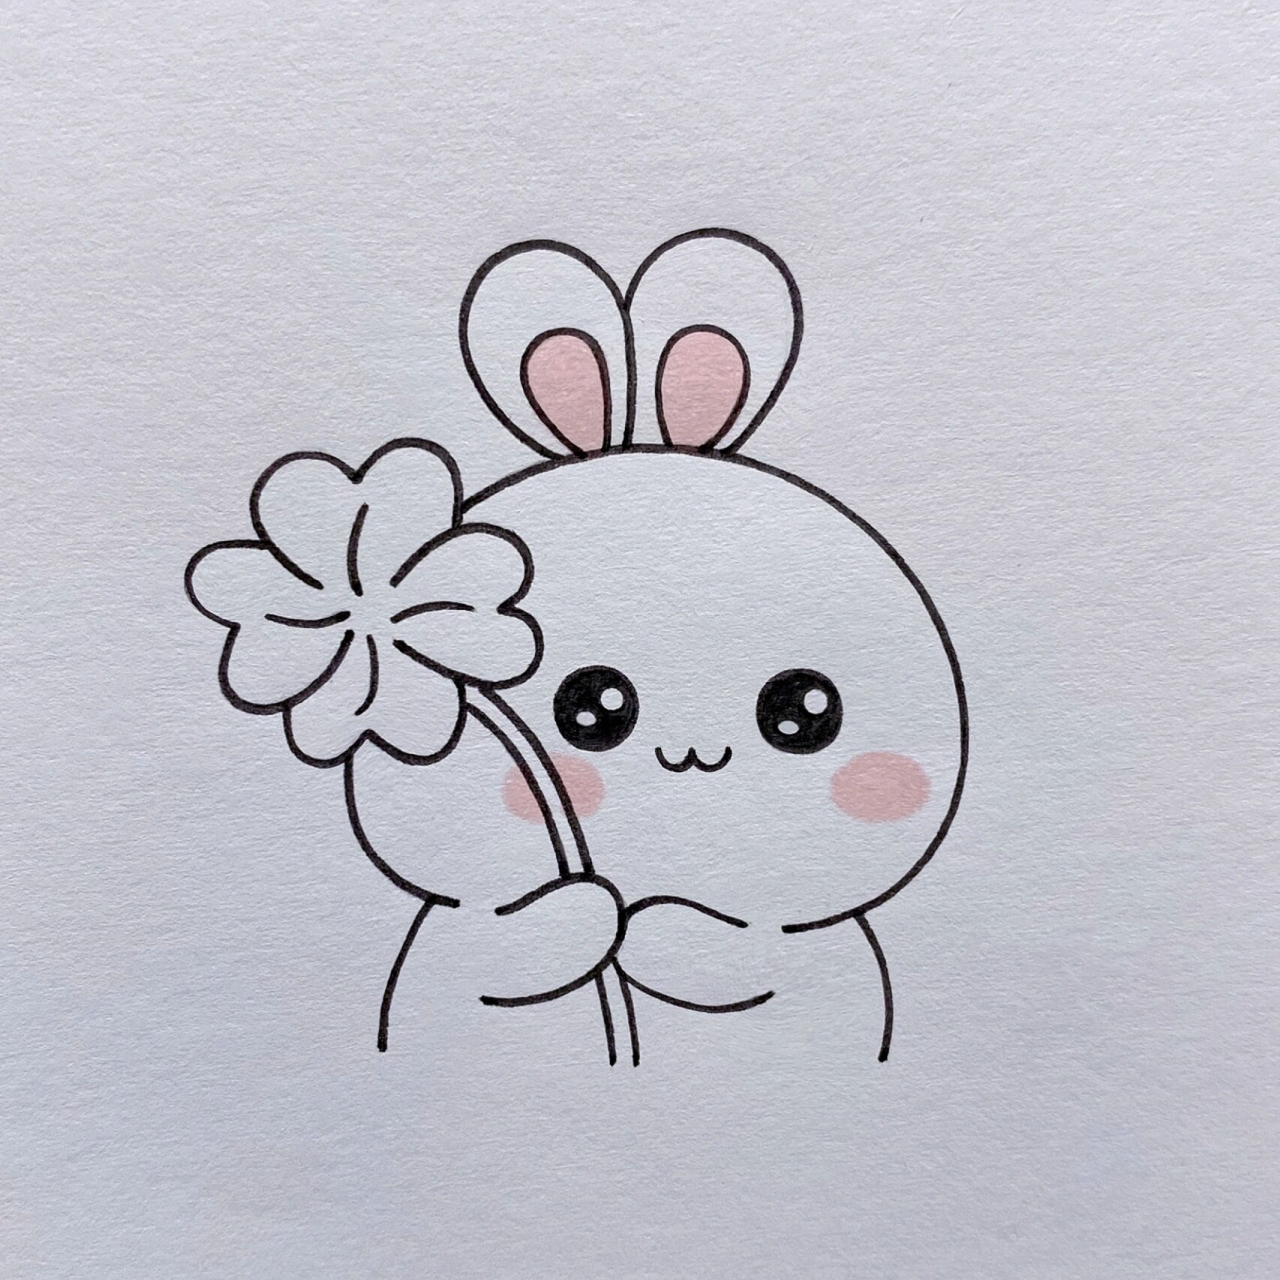 小兔子简笔画可爱型图片